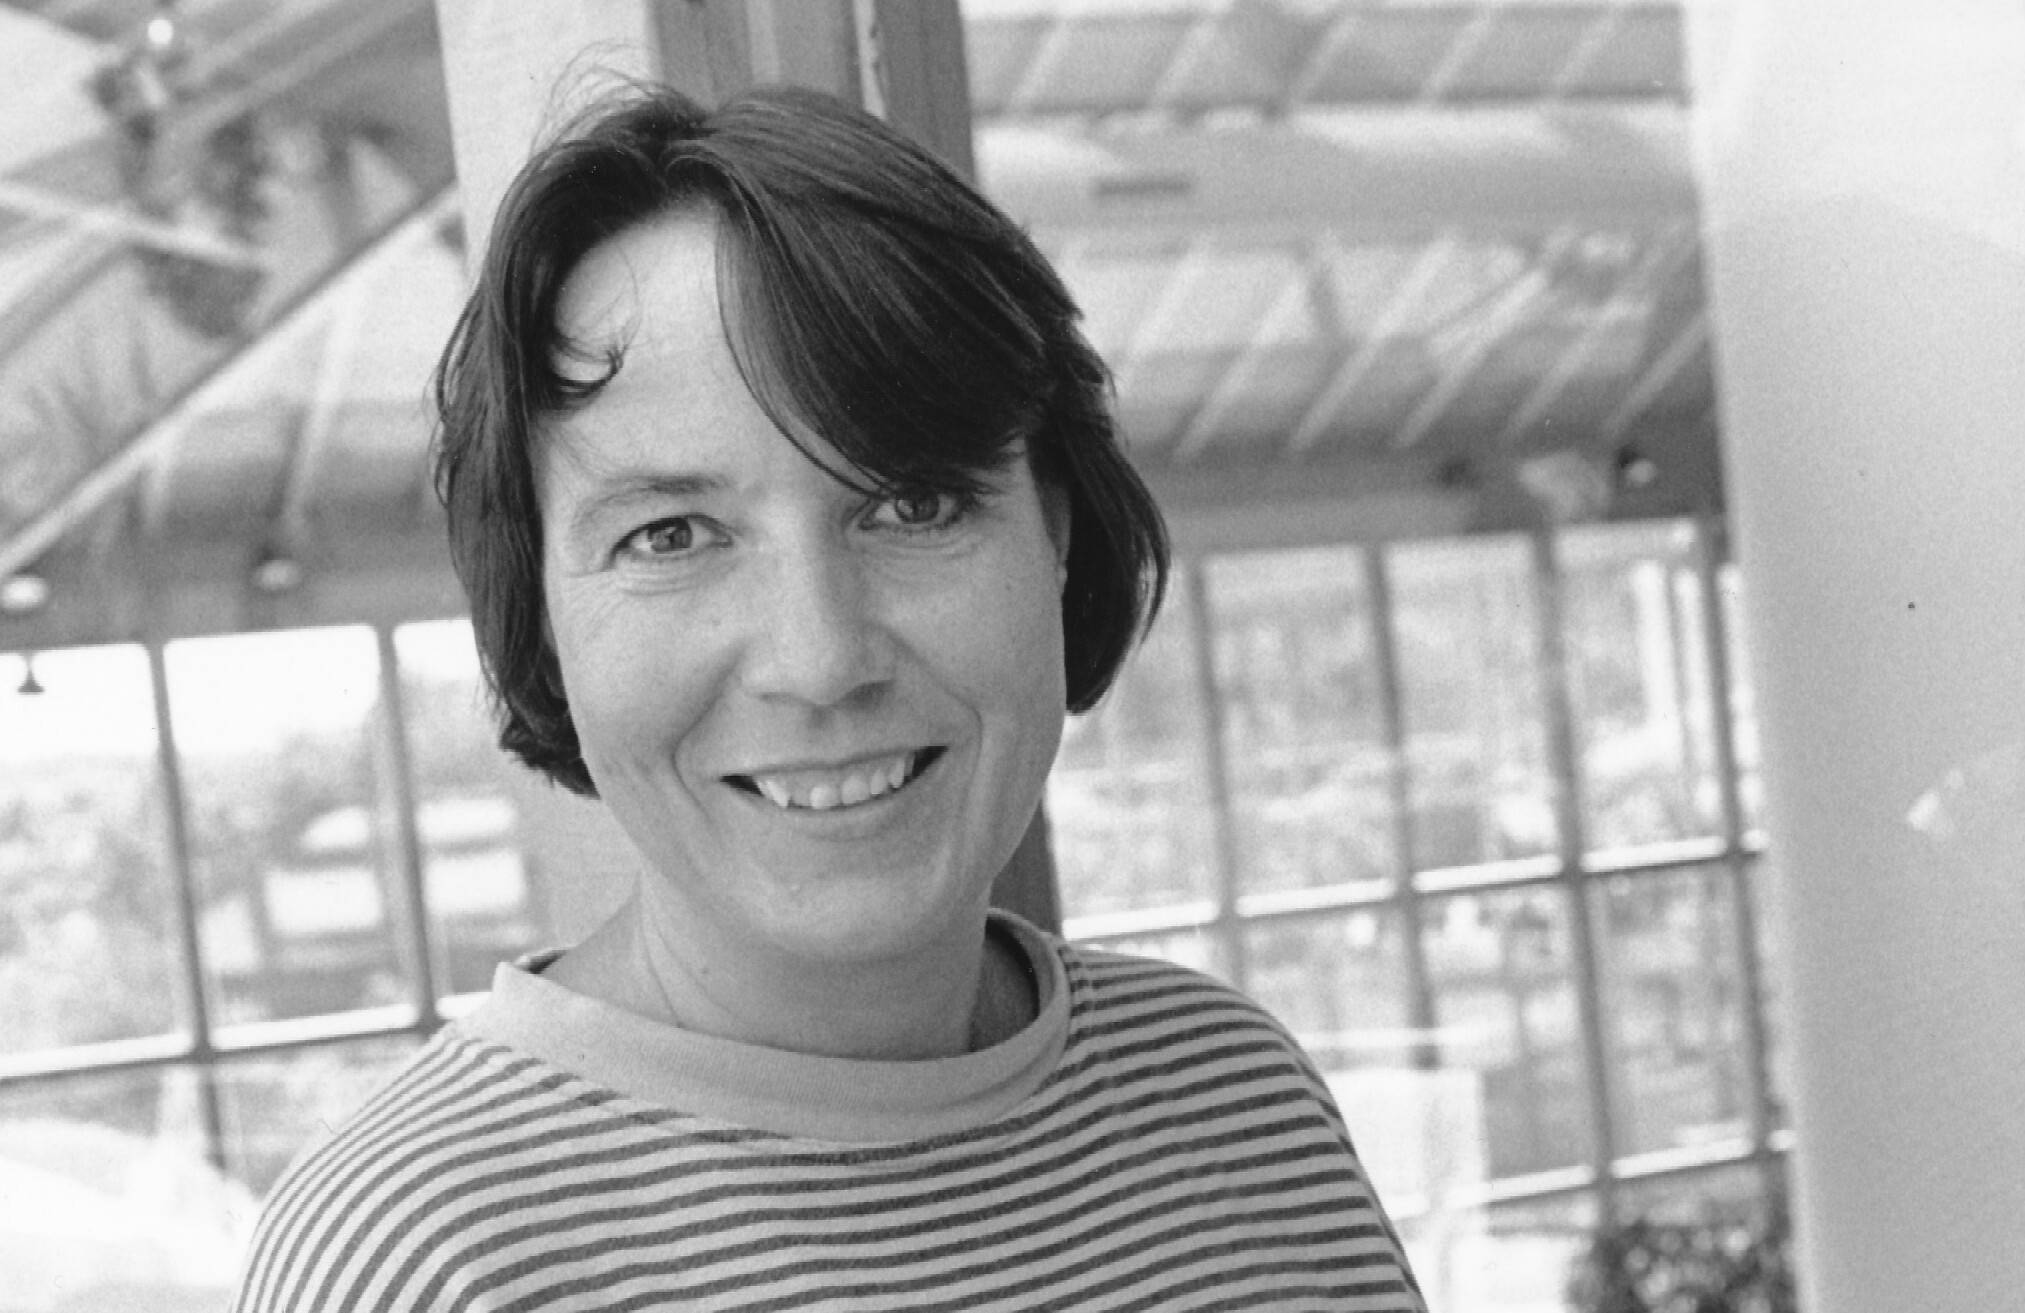  Sabina Bartholmä war mehr als 30 Jahre lang Rundschau-Redakteurin und eine Institution in der Wuppertaler Kulturlandschaft. 